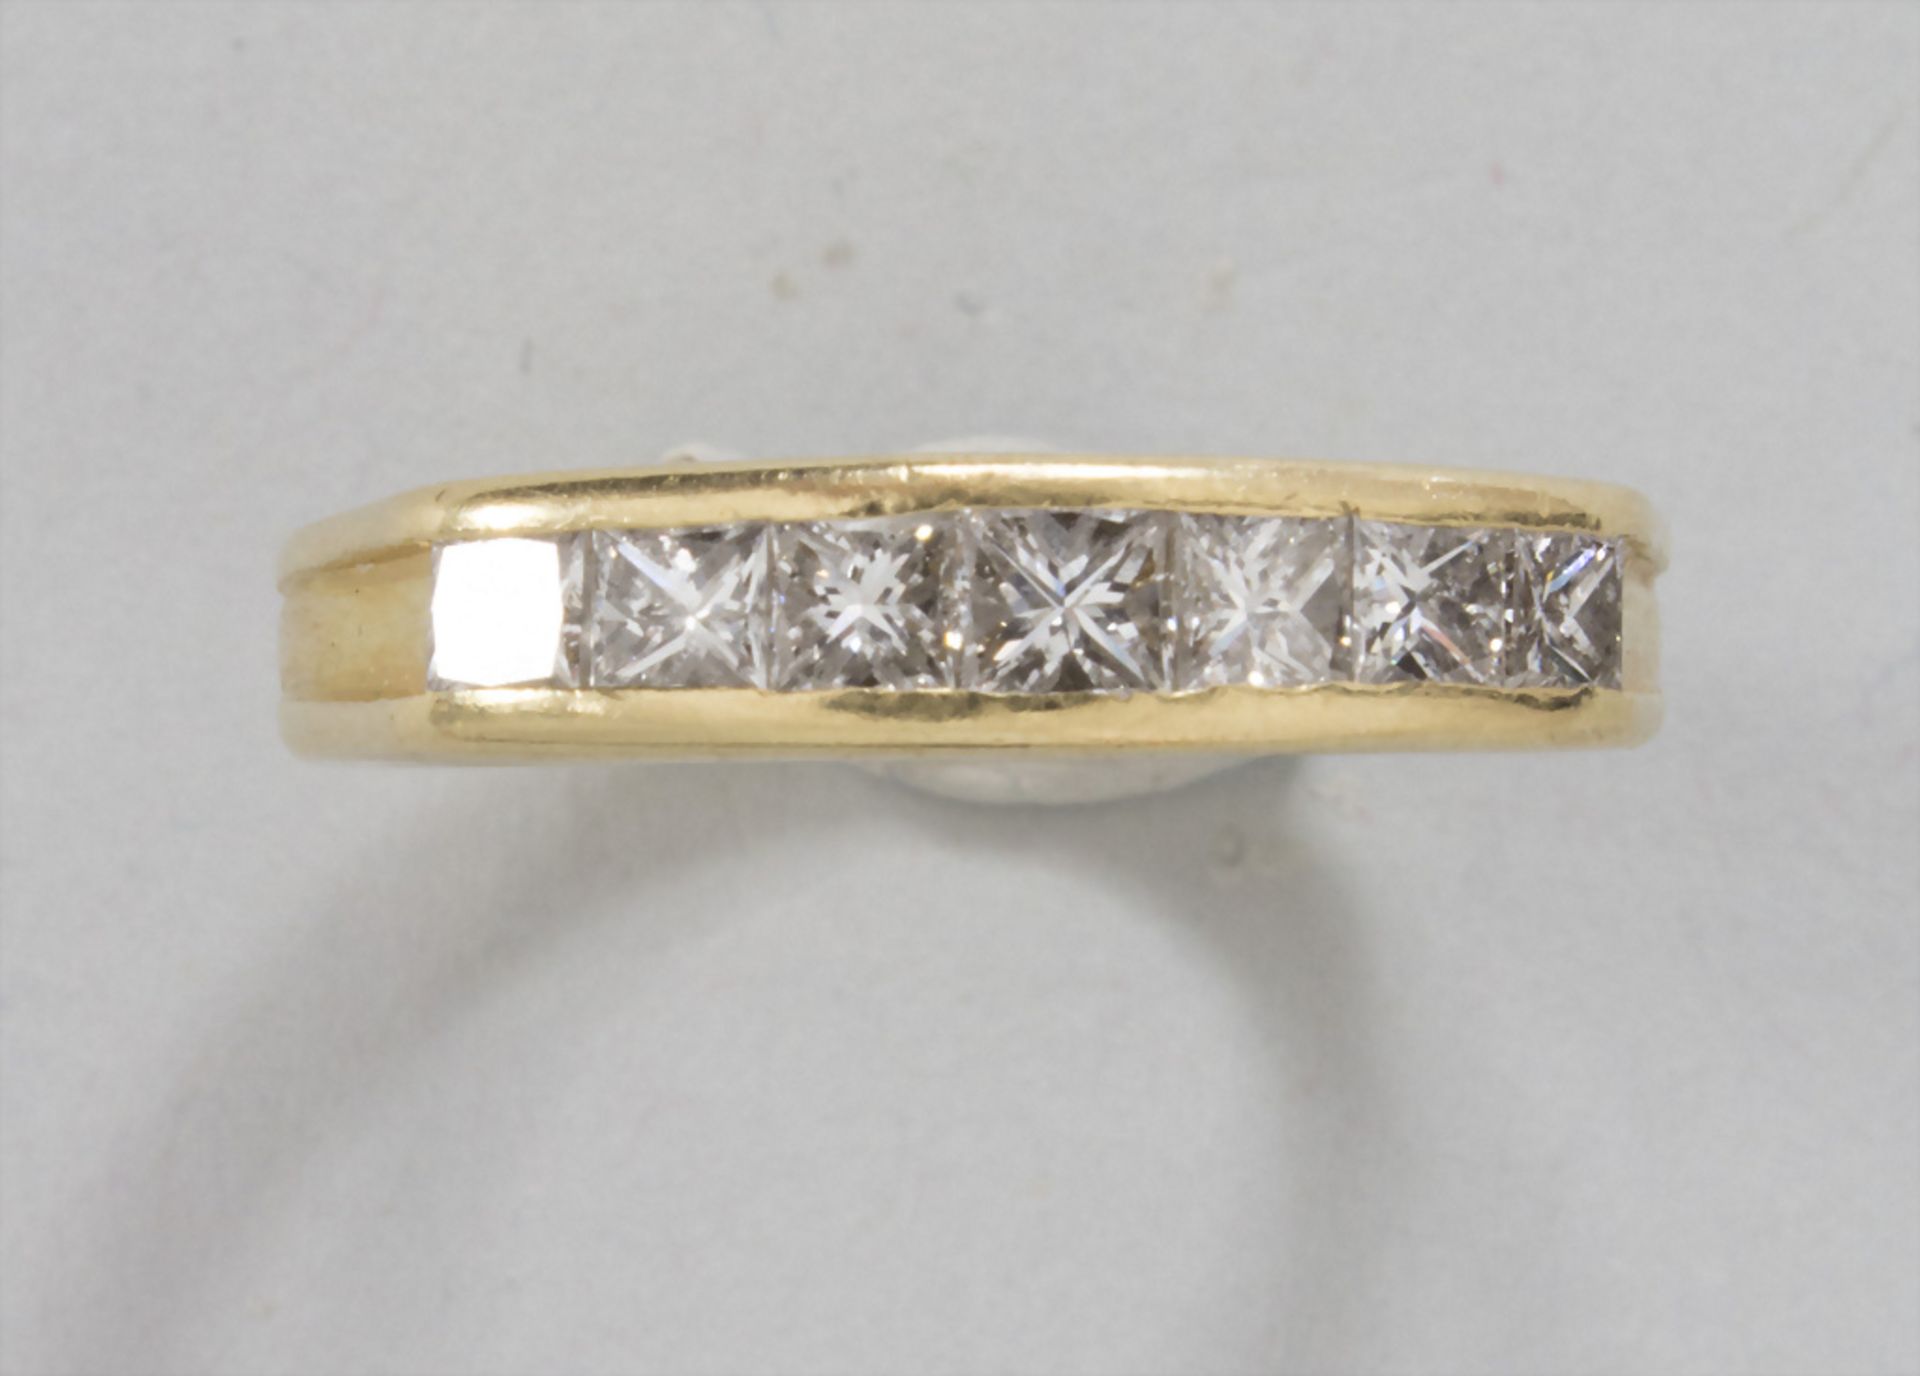 Damenring mit Diamanten / A ladies ring with diamonds - Image 2 of 4